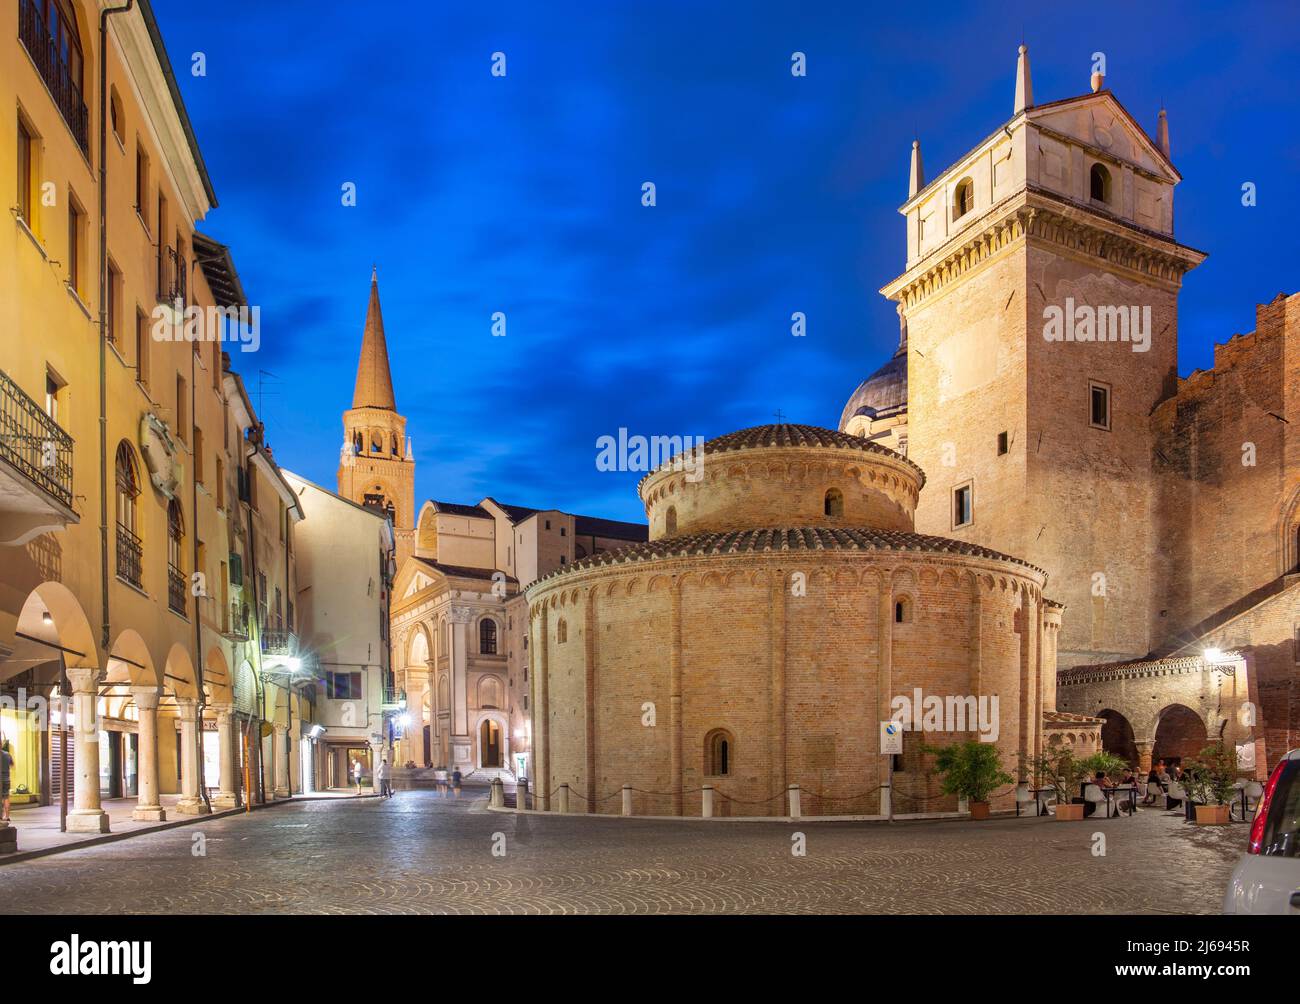 Piazza delle Erbe, Mantova (Mantua), UNESCO World Heritage Site, Lombardia (Lombardy), Italy Stock Photo